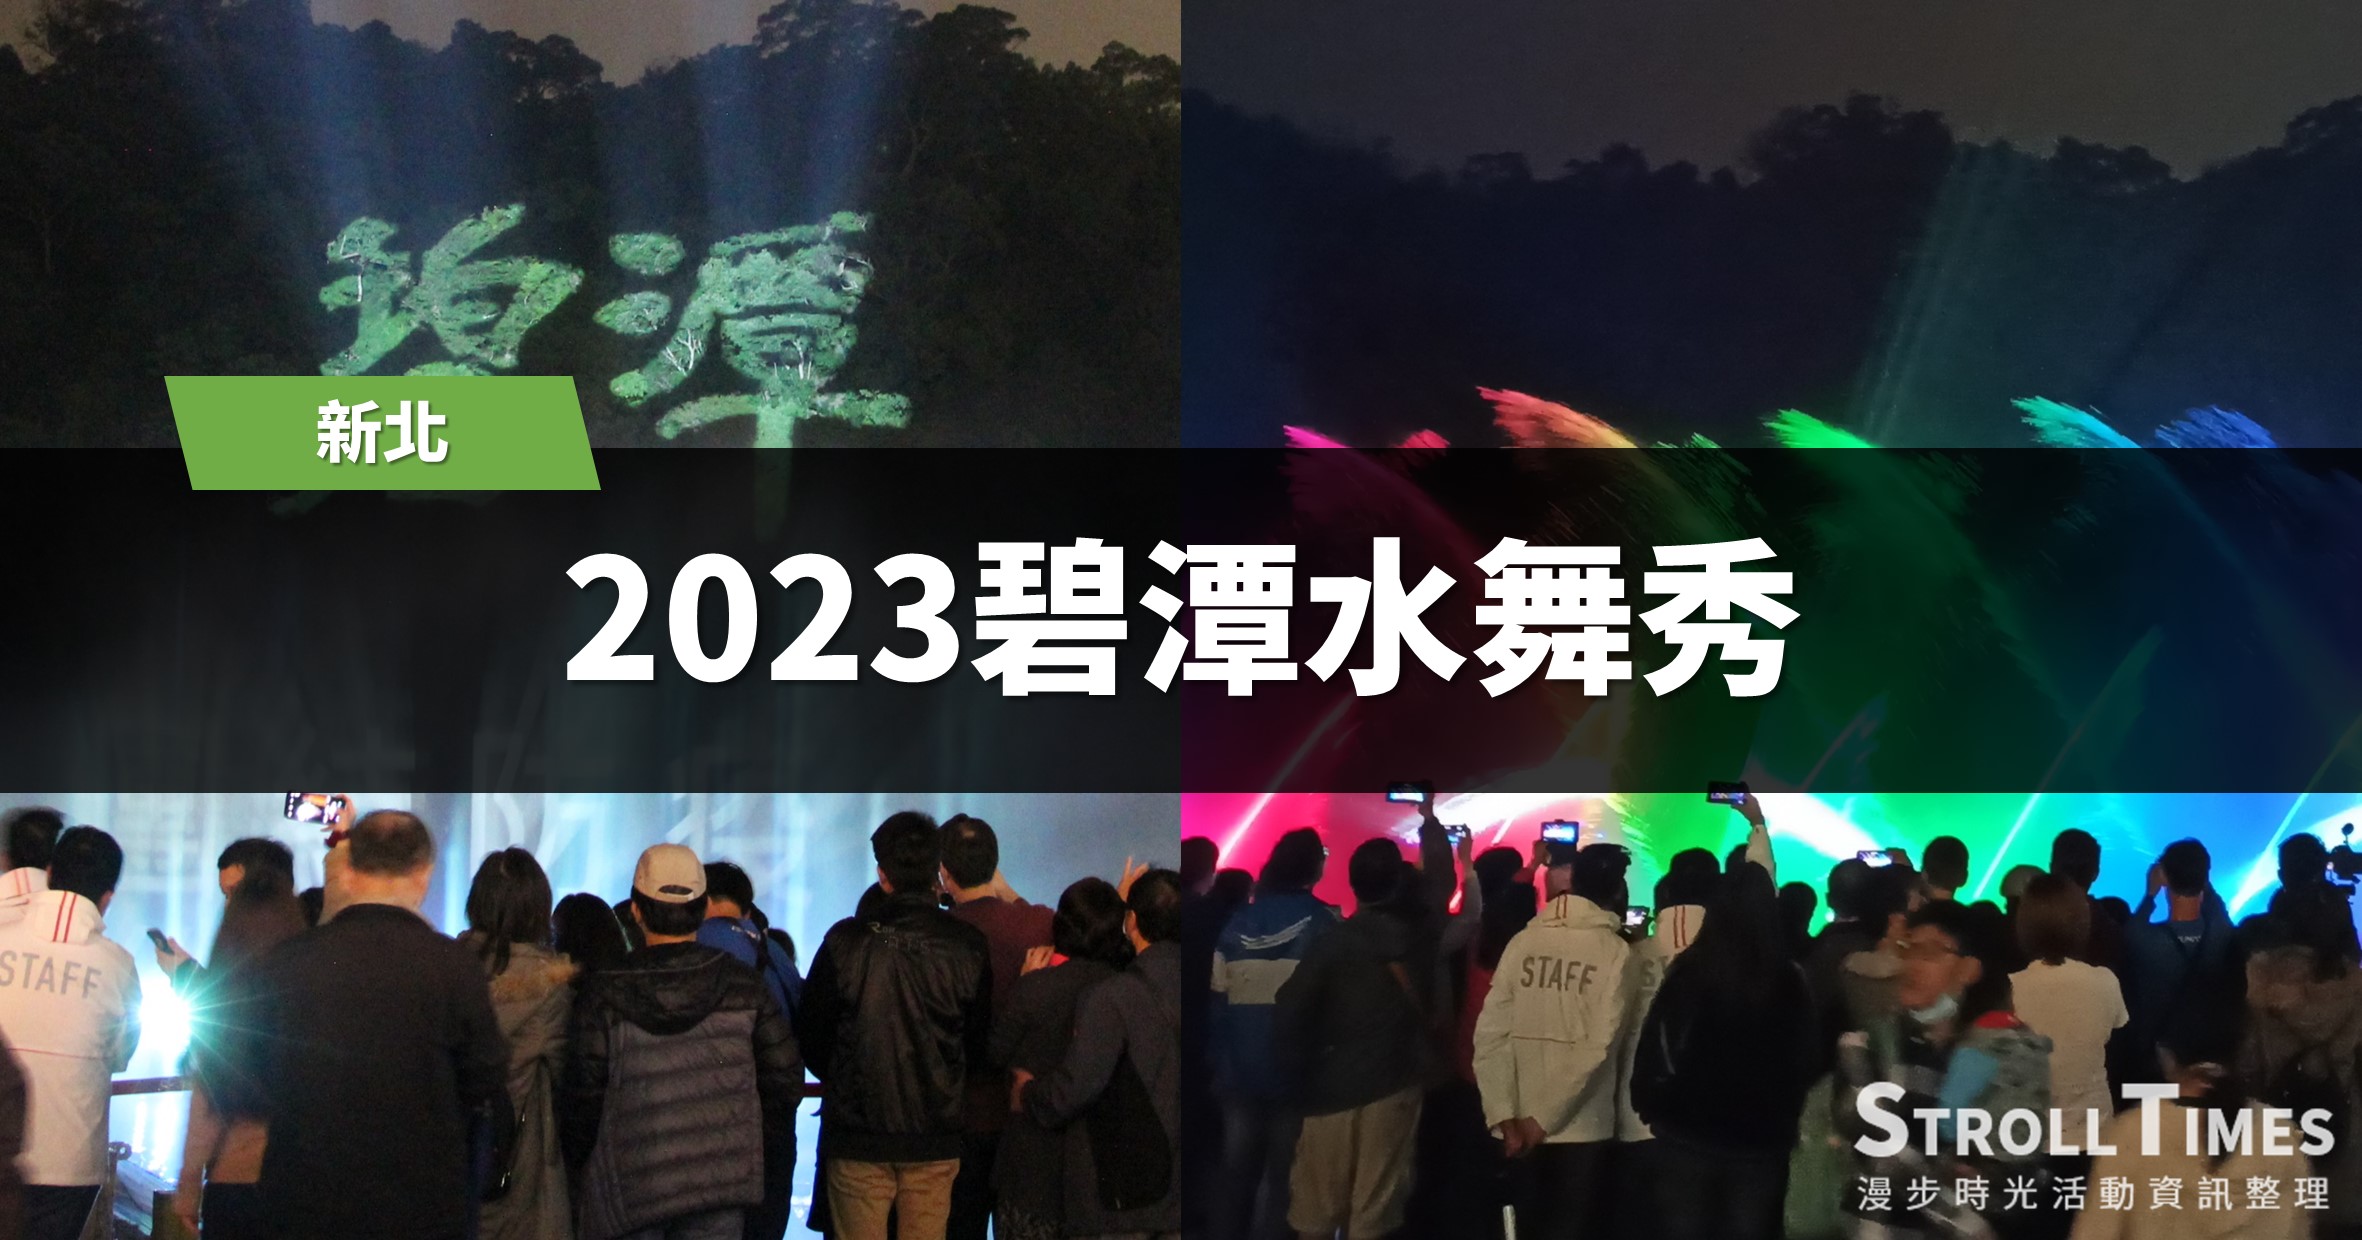 2023碧潭水舞秀：10個主題系列活動、9個景點推薦、7個行程規劃 @漫步時光